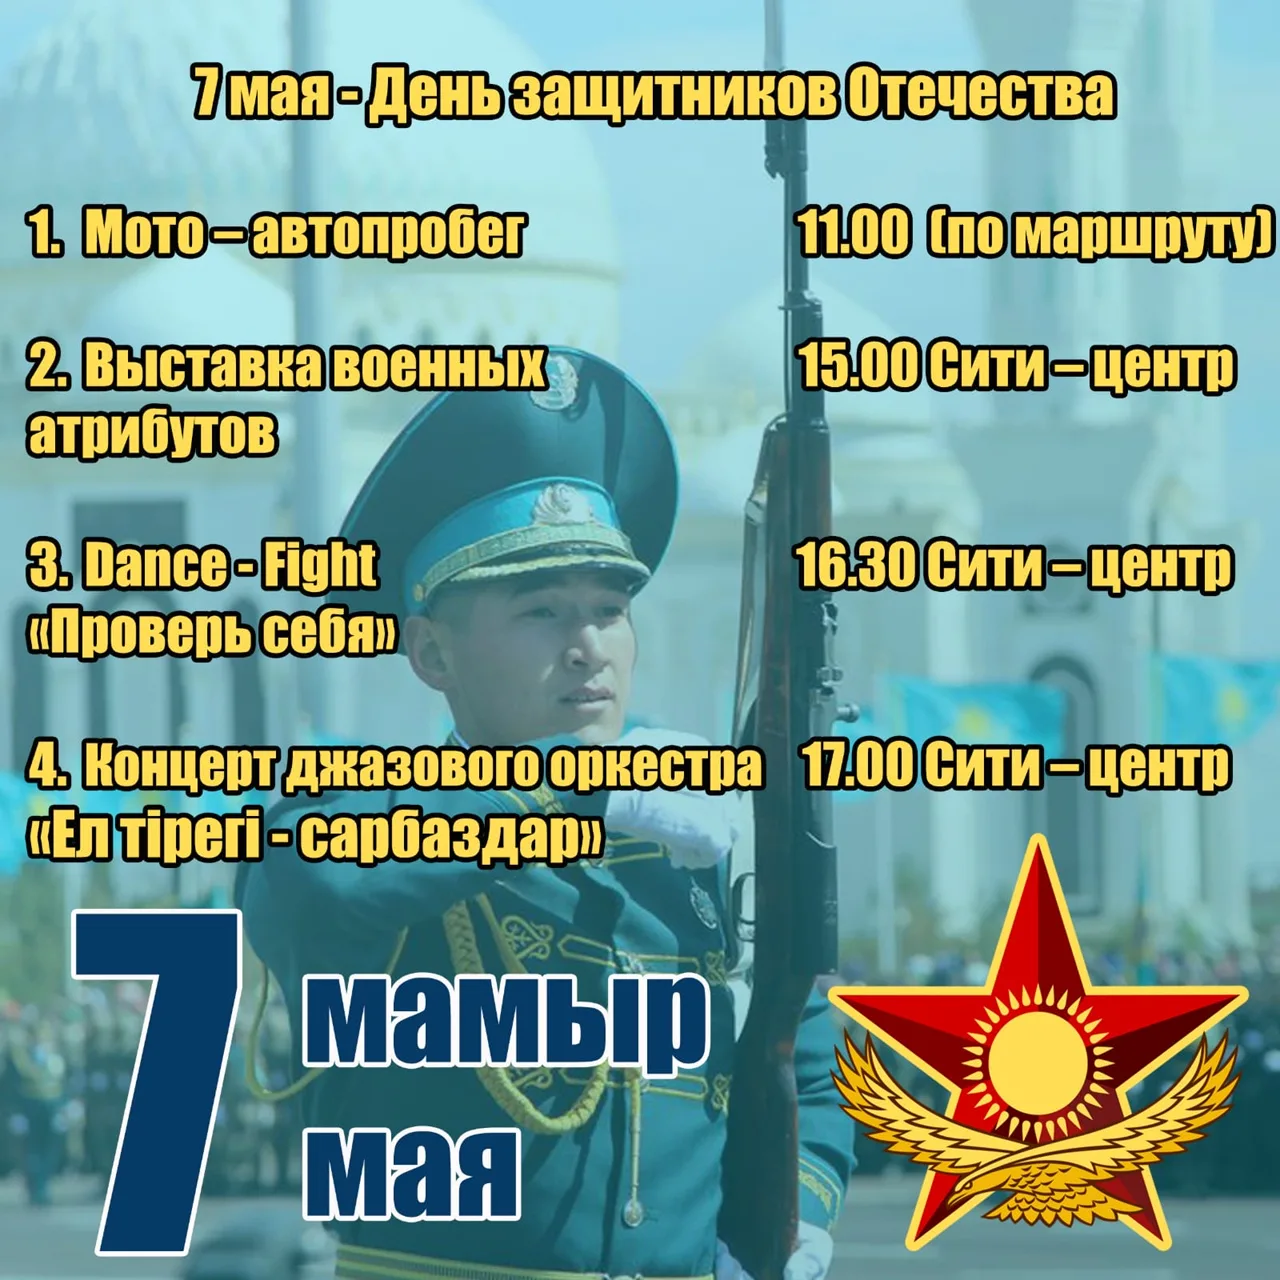 7 мая казахстан день. 7 Мая день защитника Отечества. День защитника Отечества Казахстан. 7 Мая день защитника Отечества в Казахстане. Денъзащитника Отечества в Казахстане.